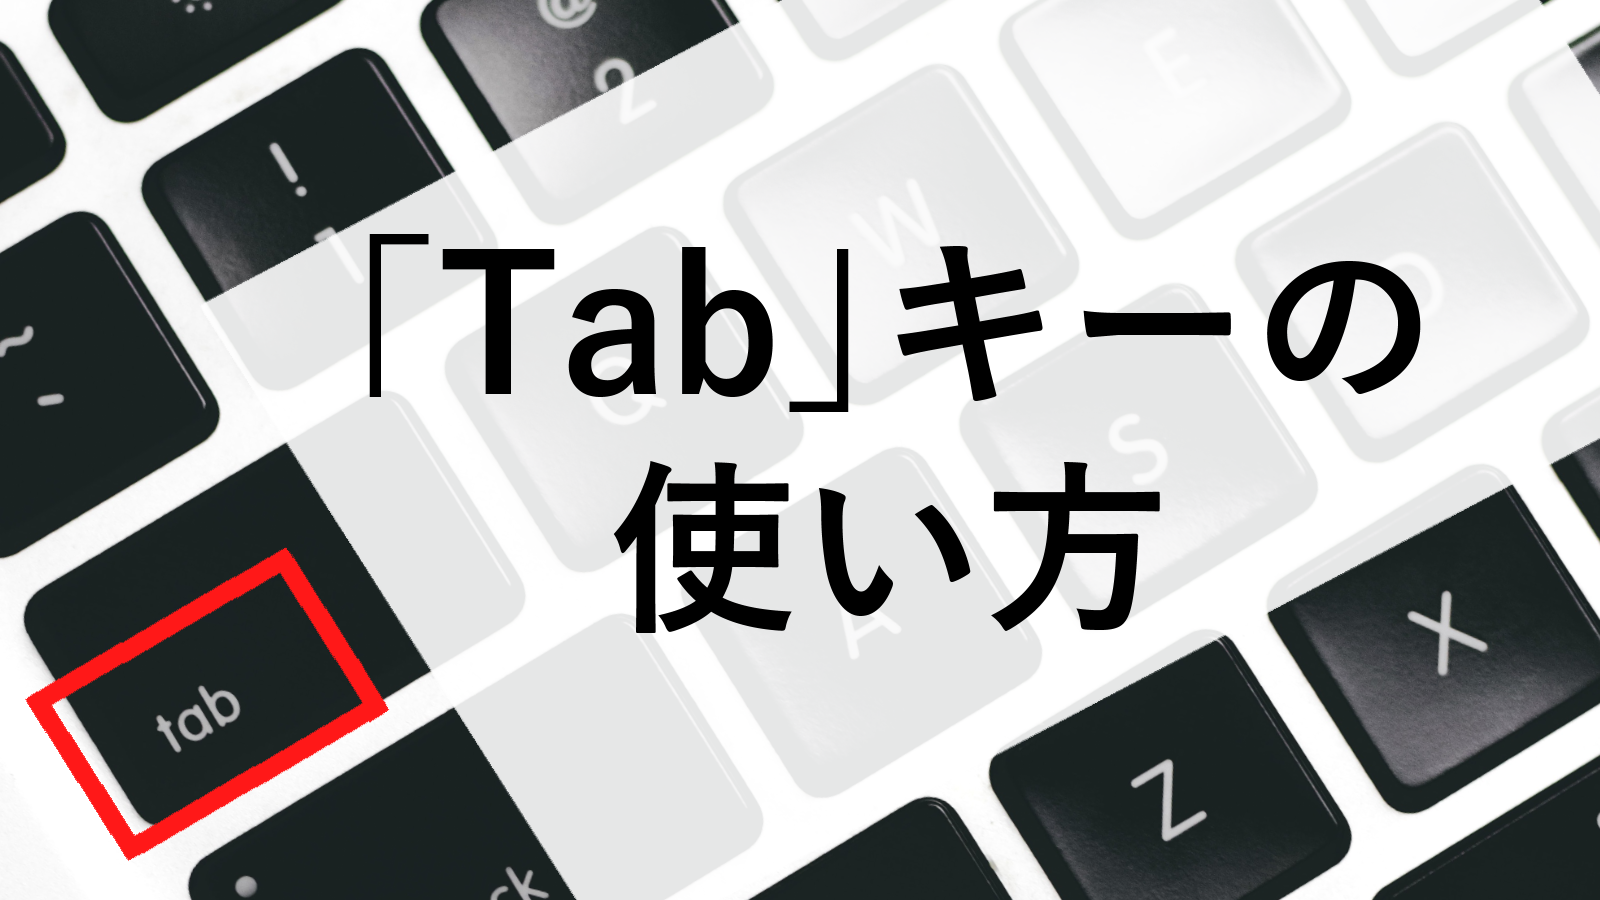 Tab キーとは何 意外と便利な使い方を解説 キーボード基本操作 パソコンの教科書